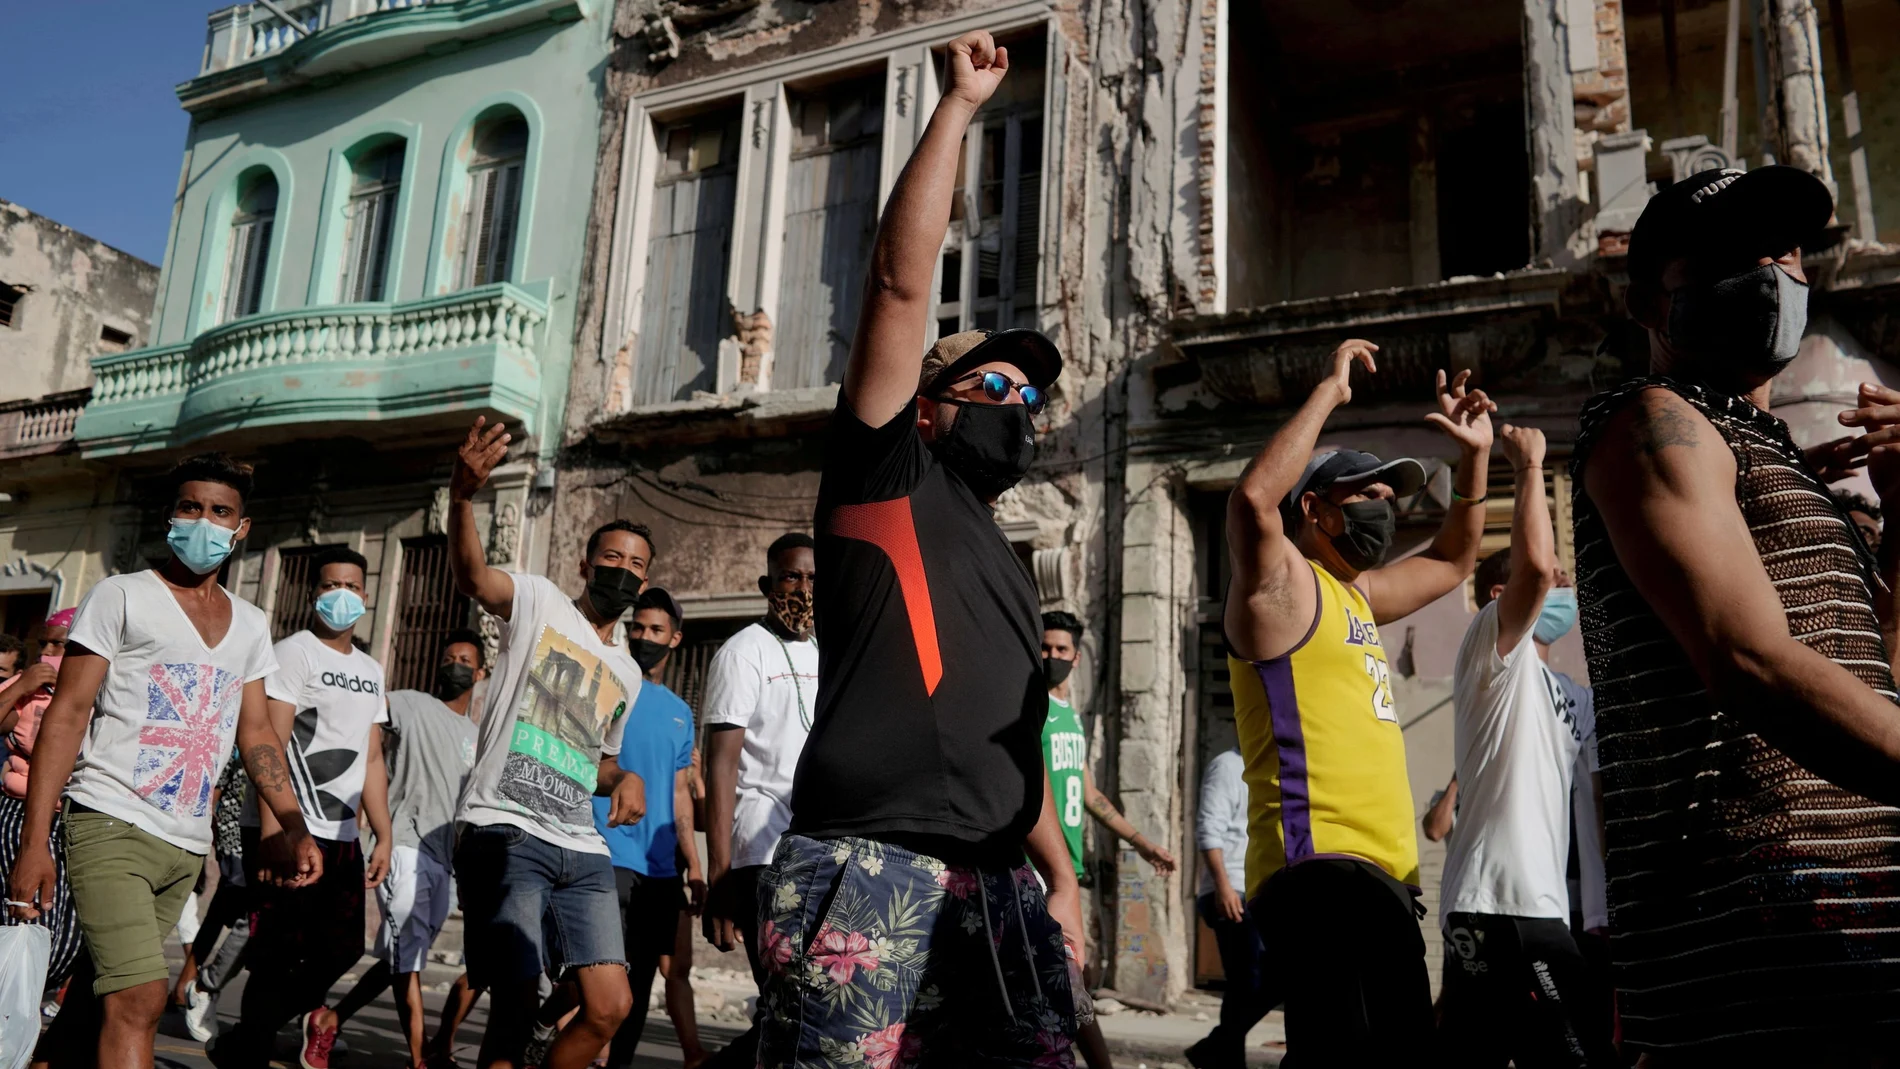 La gente grita consignas contra el gobierno durante una protesta en contra y en apoyo del gobierno, en medio del brote de la enfermedad coronavirus (COVID-19), en La Habana, Cuba, el 11 de julio de 2021.